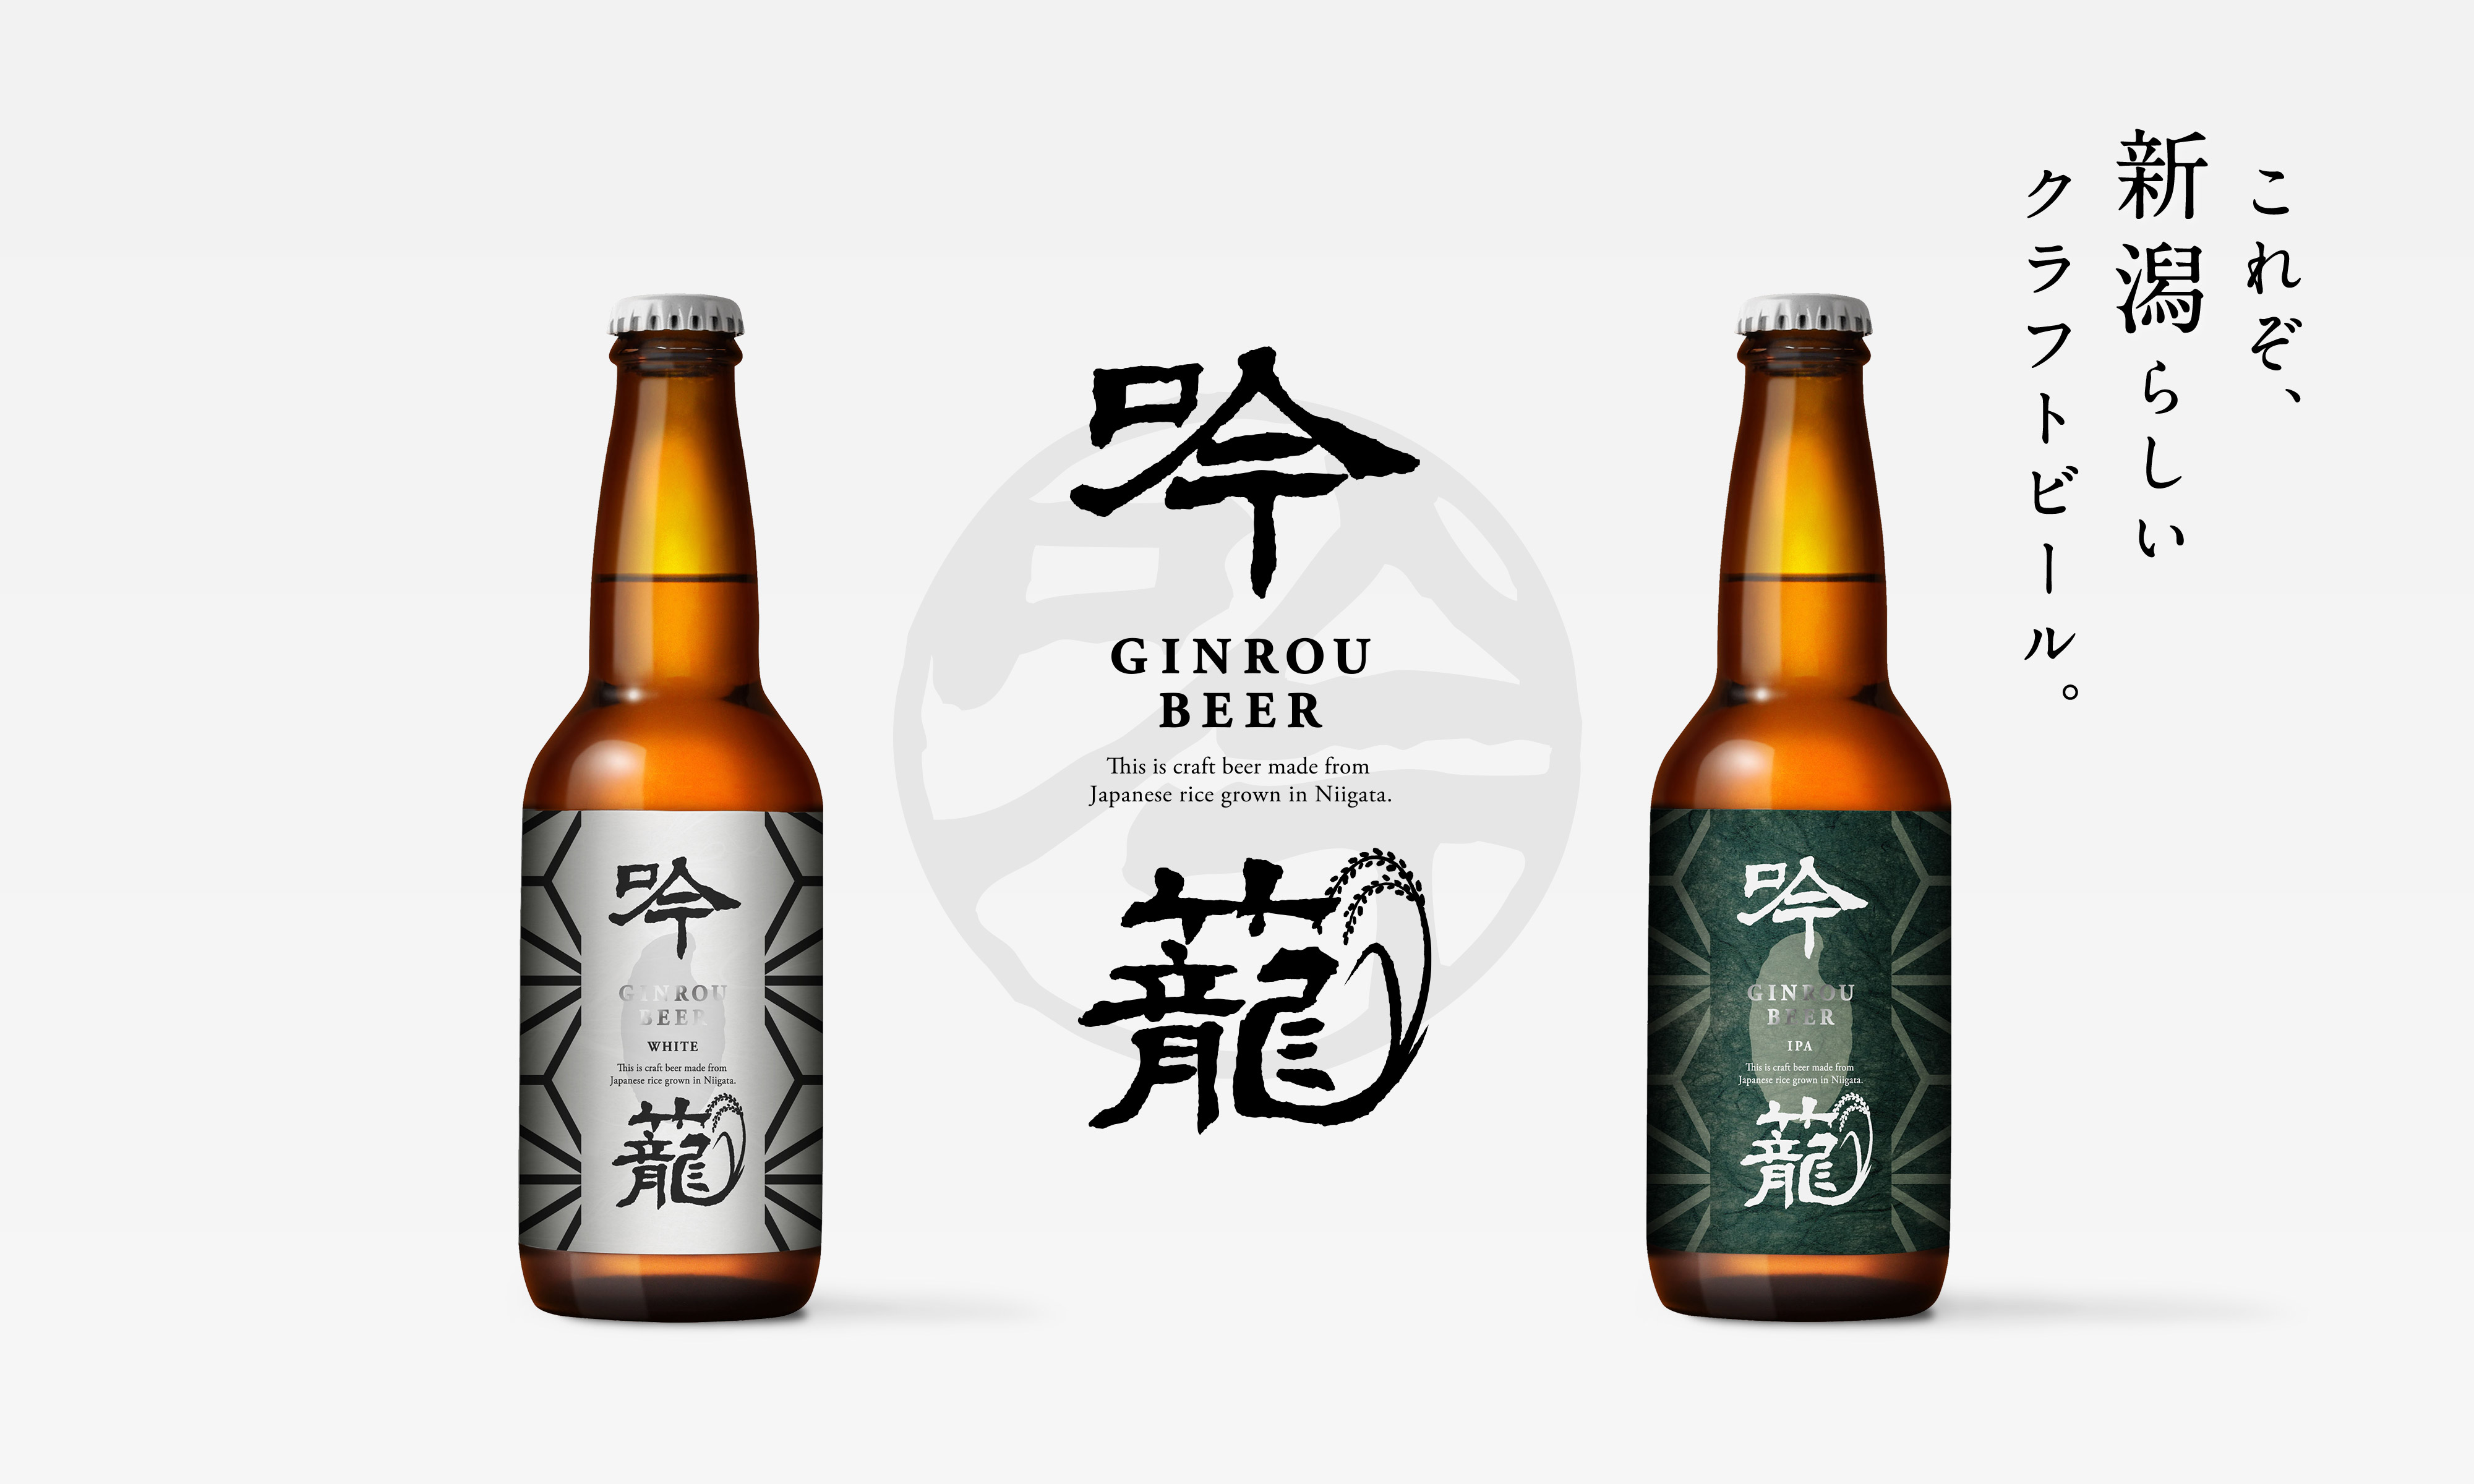 これぞ新潟らしいクラフトビール This is craft beer made from Japanese rice grown in Niigata.